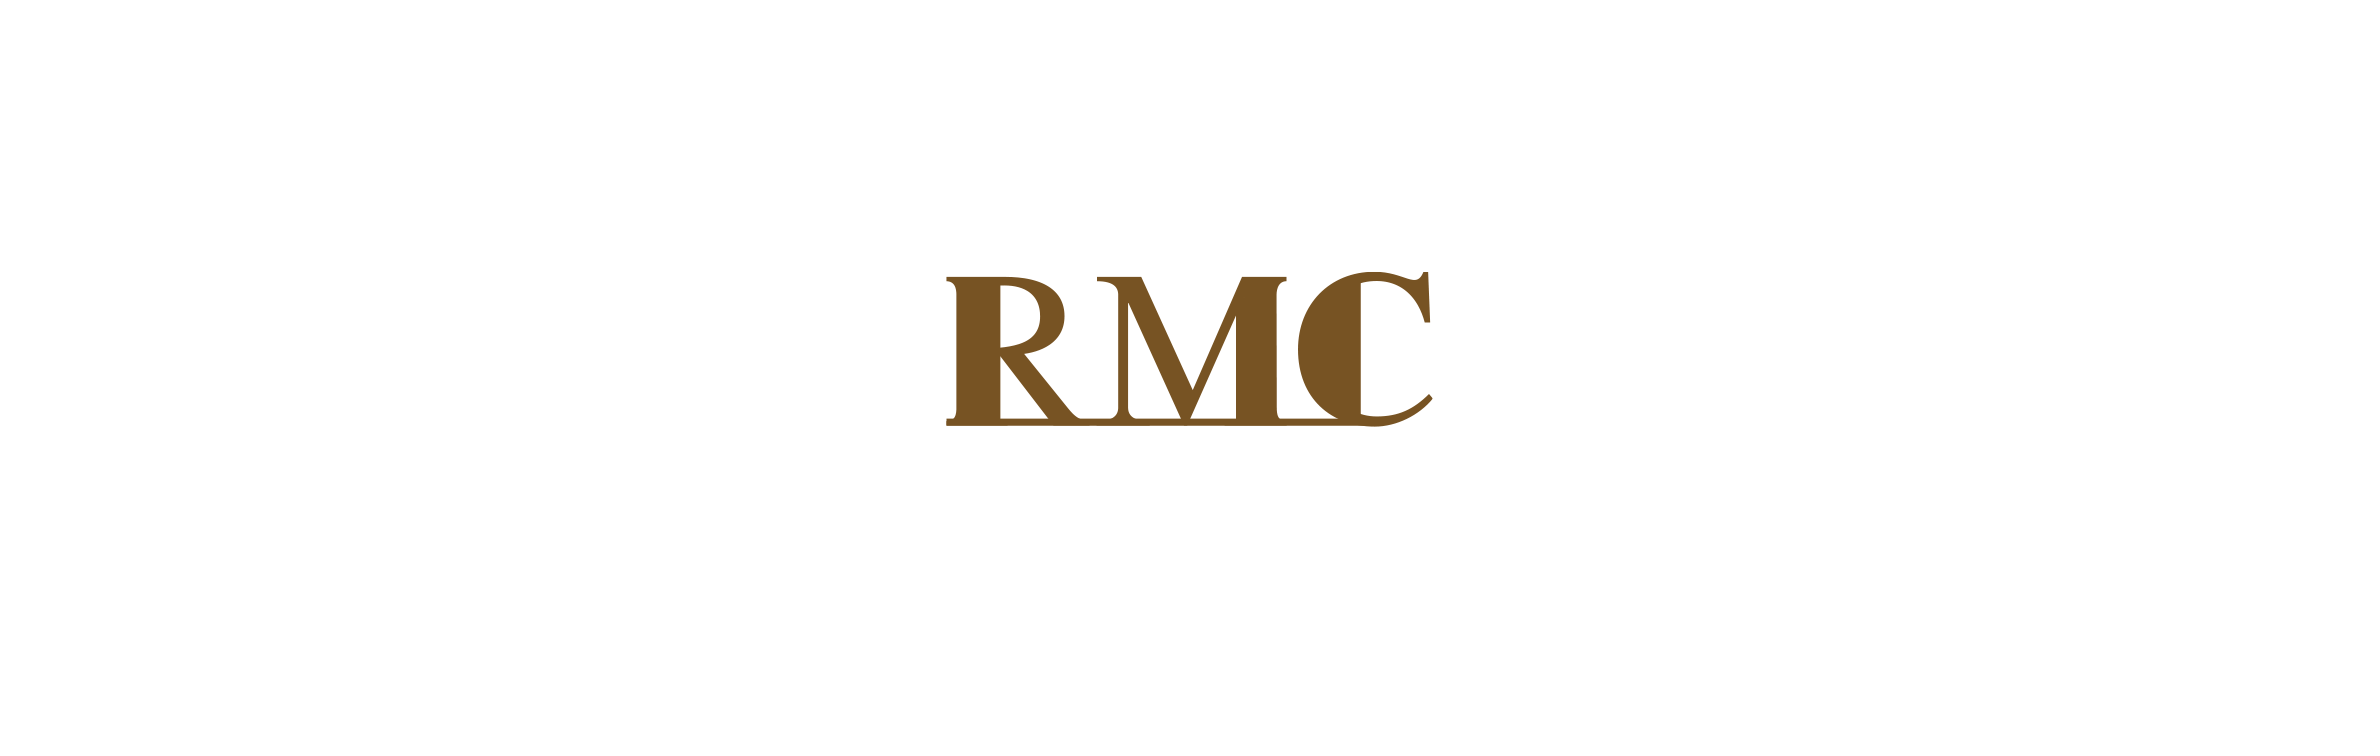 RMC(REAR-SIDE AR COATING)